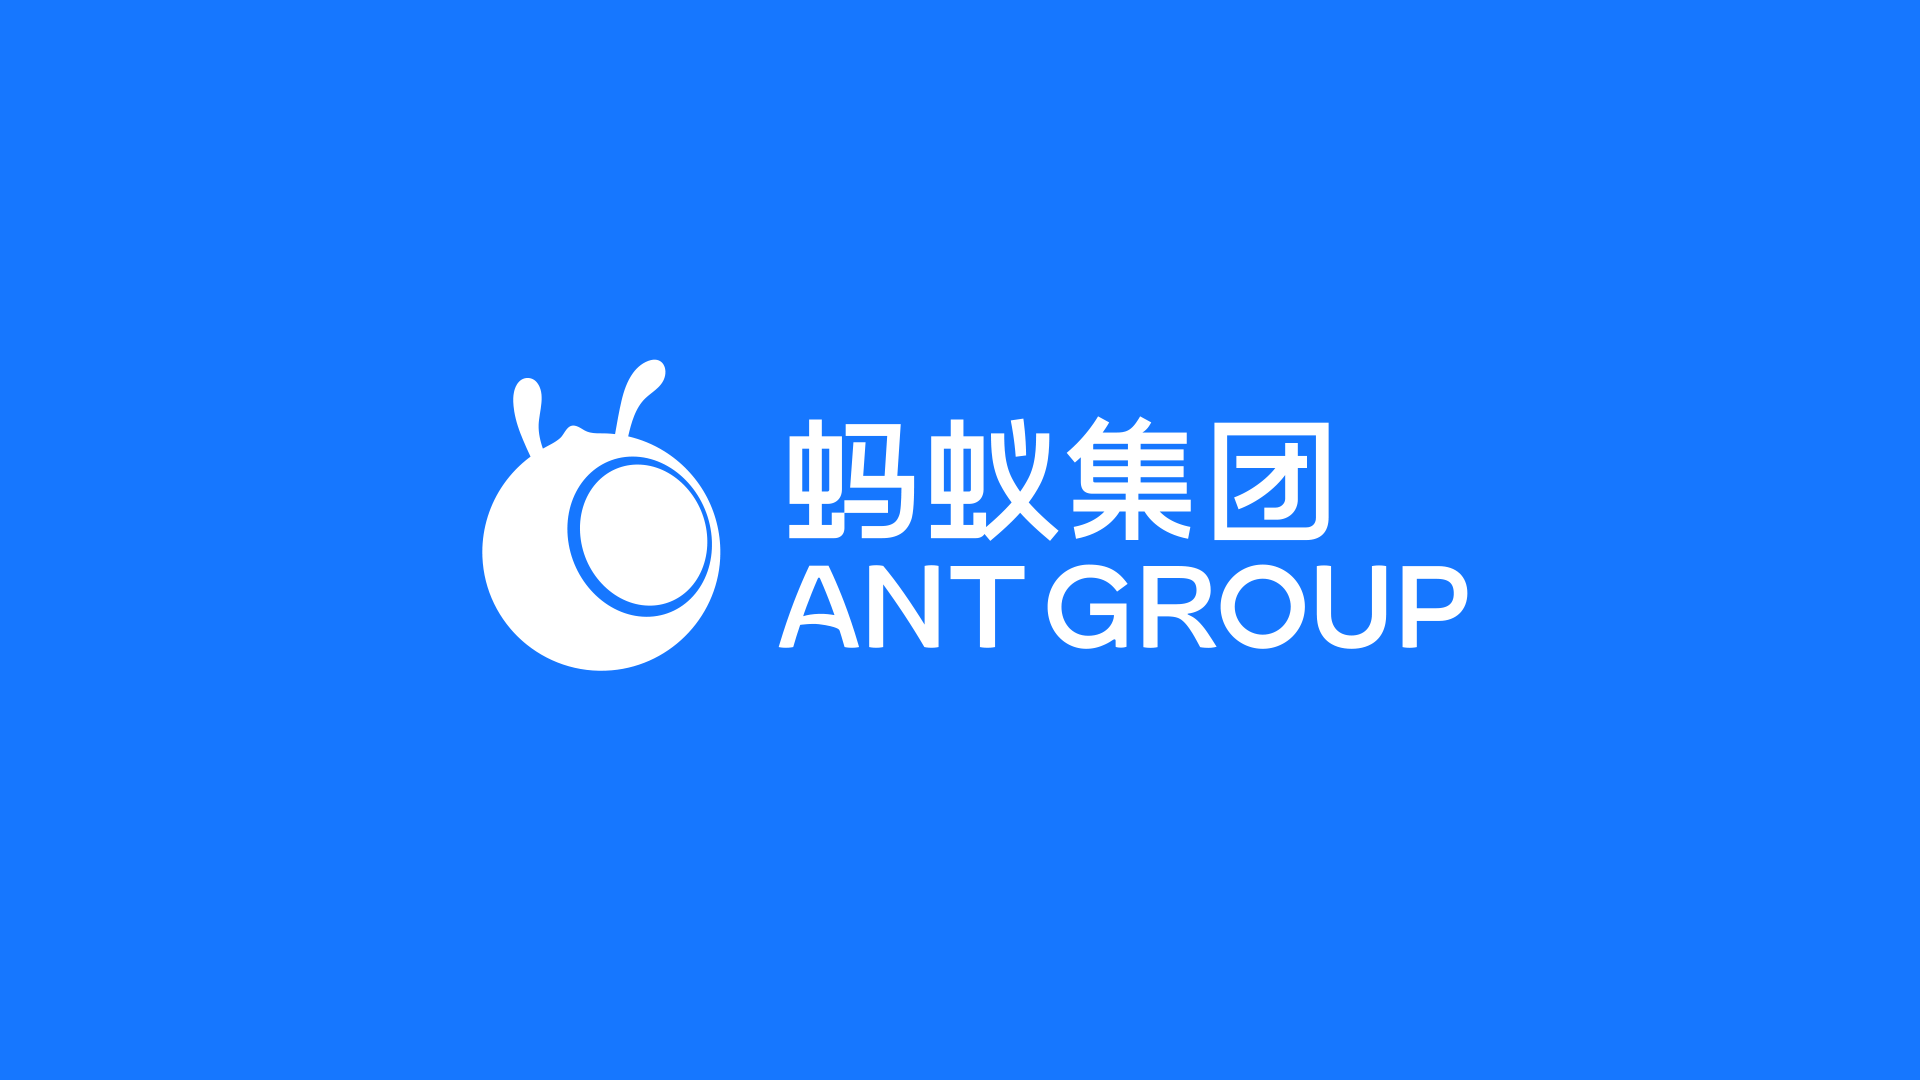 蚂蚁金服改名蚂蚁集团并发布新logo设计